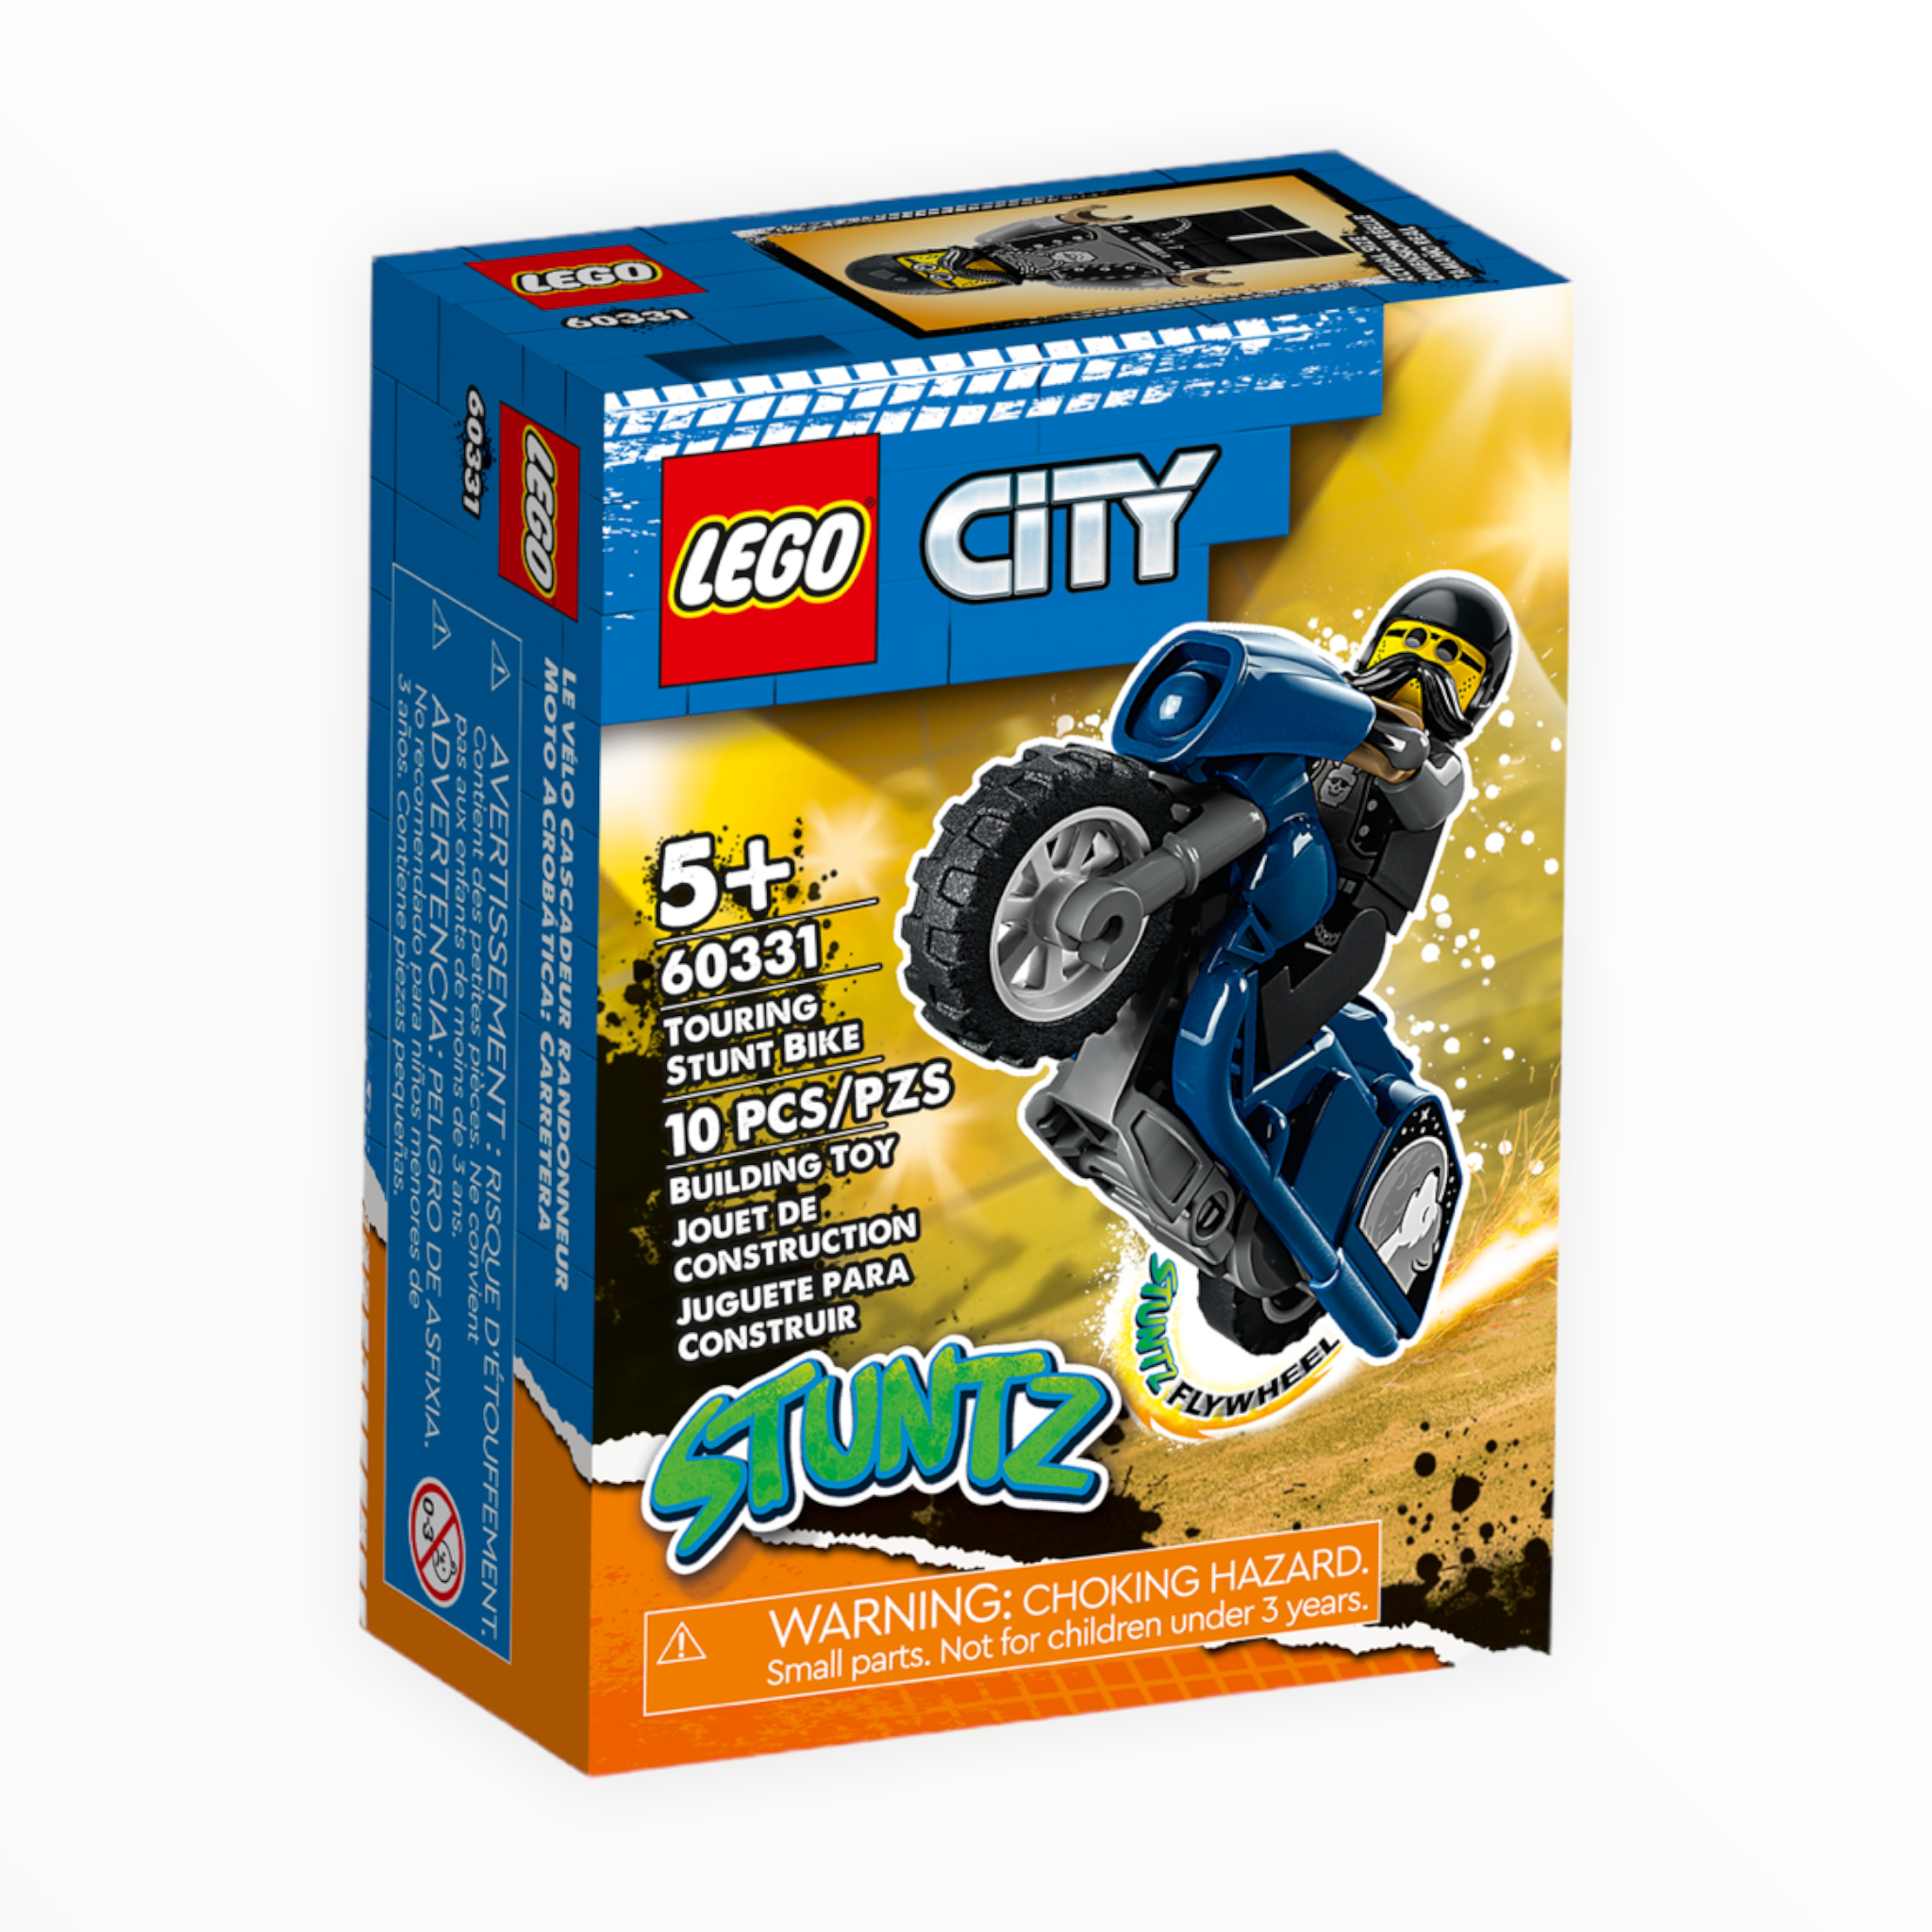 60331 City Touring Stunt Bike